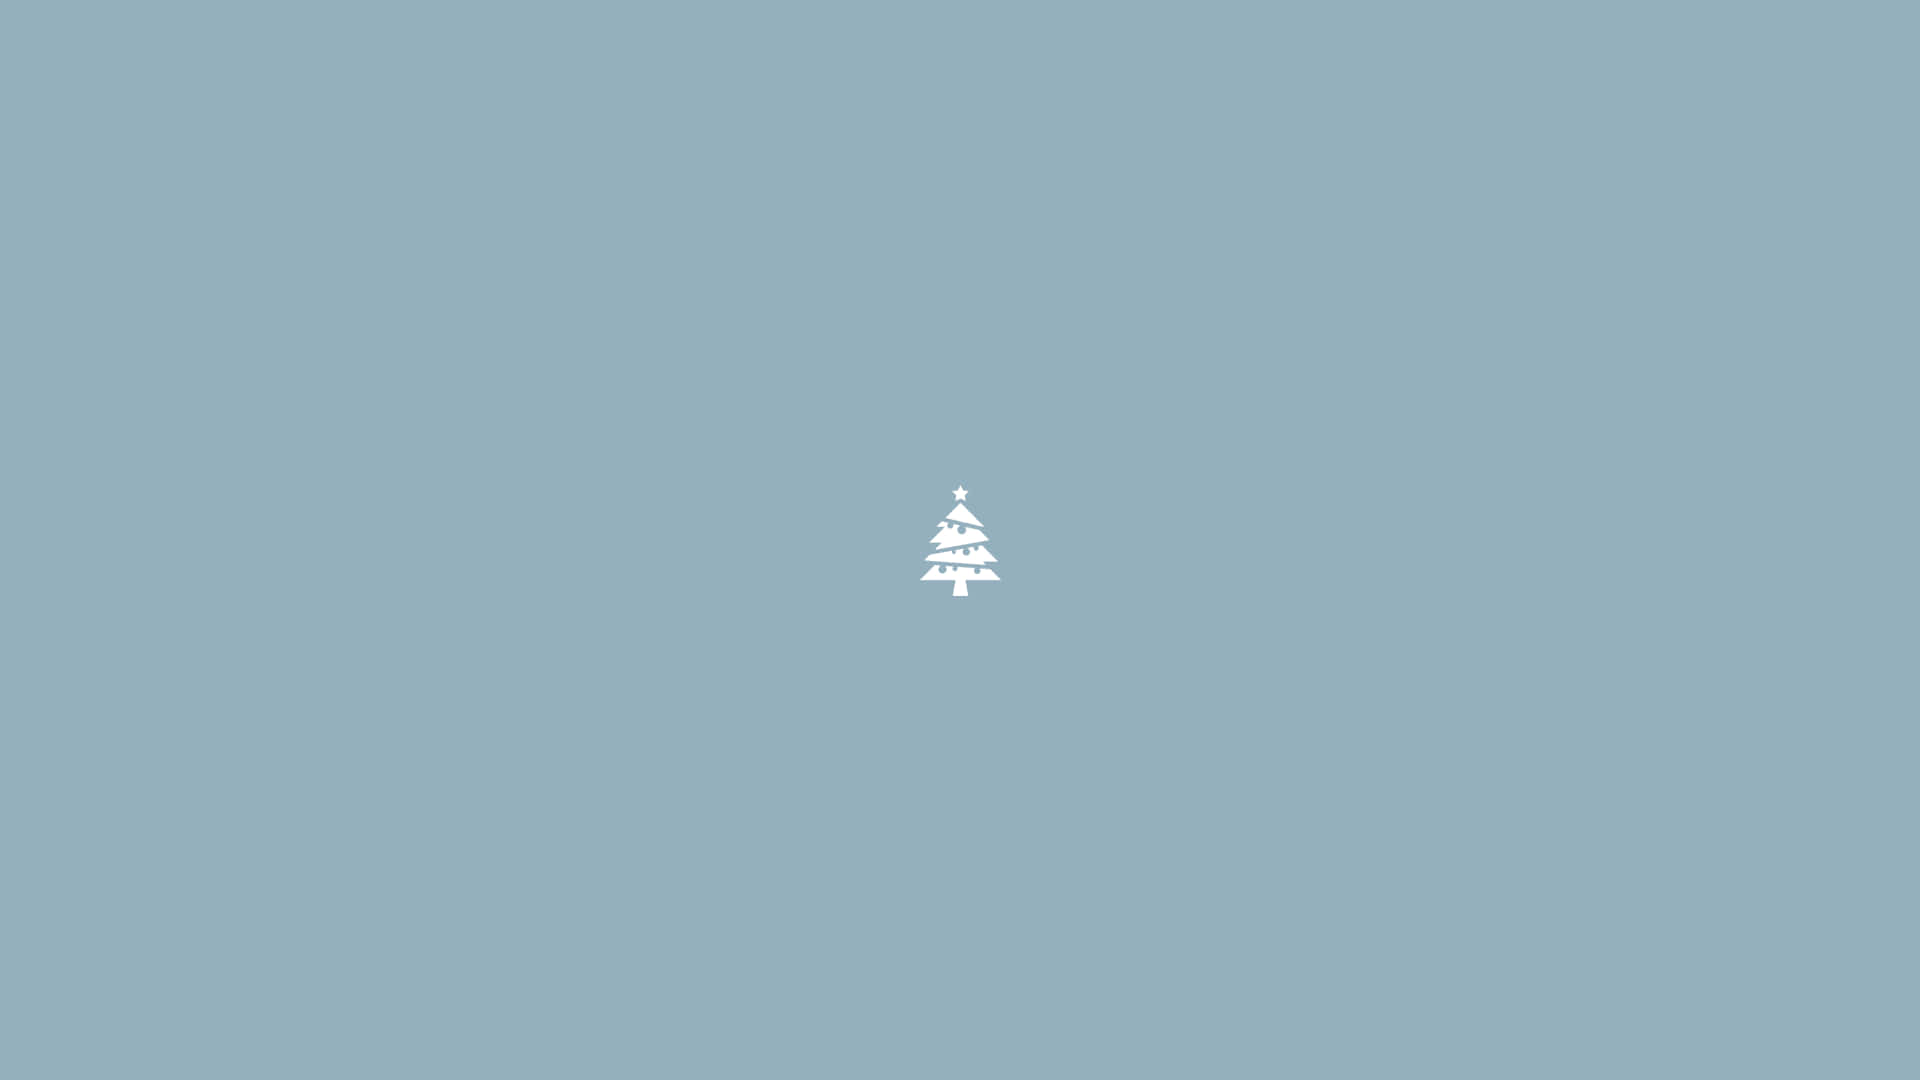 Hình nền desktop Giáng sinh tối giản miễn phí - Bạn đang tìm kiếm một hình nền desktop Giáng sinh đẹp mắt và đầy tính thẩm mỹ? Hãy thử ngay những hình nền tối giản miễn phí của chúng tôi! Với không gian trang trí Giáng sinh đơn giản và đầy nghệ thuật, bạn sẽ đón một mùa Giáng sinh thật đầy ấn tượng.